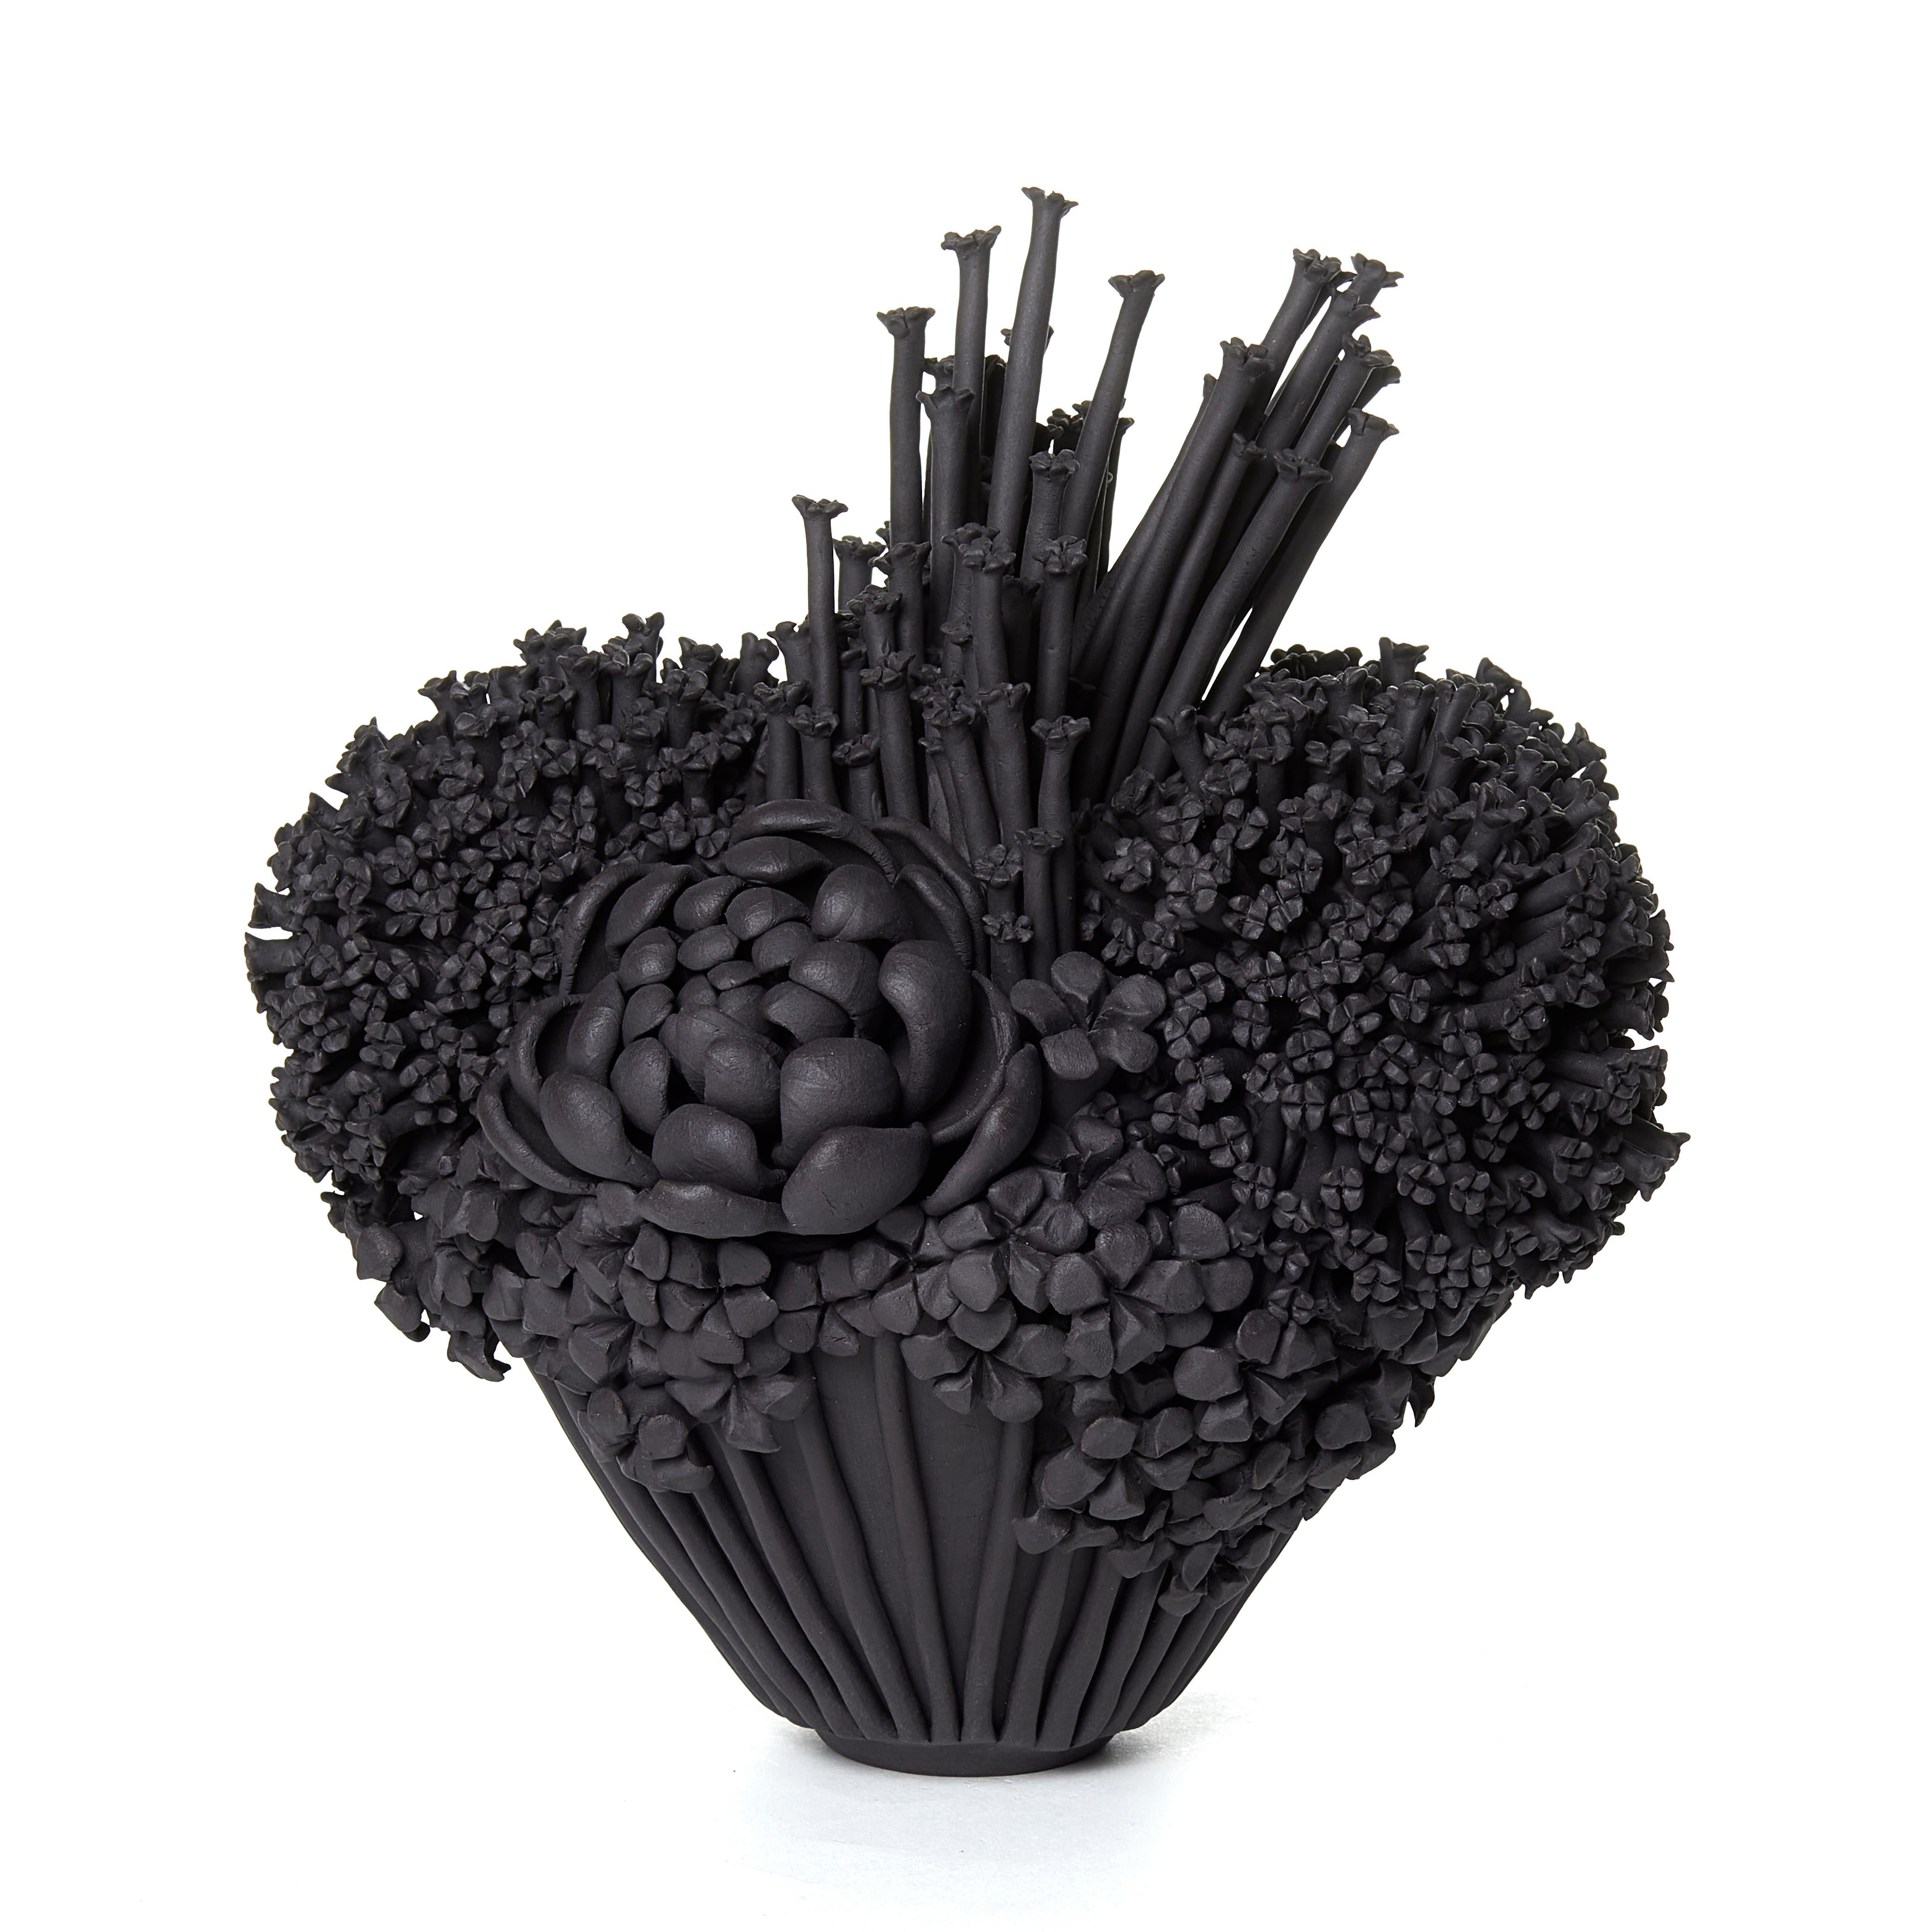 Black Efflorescence II est une sculpture unique en grès, réalisée à la main, entièrement recouverte d'une variété de fleurs et d'efflorescences, chacune individuellement réalisée à la main par l'artiste britannique Vanessa Hogge.

Vanessa Hogge